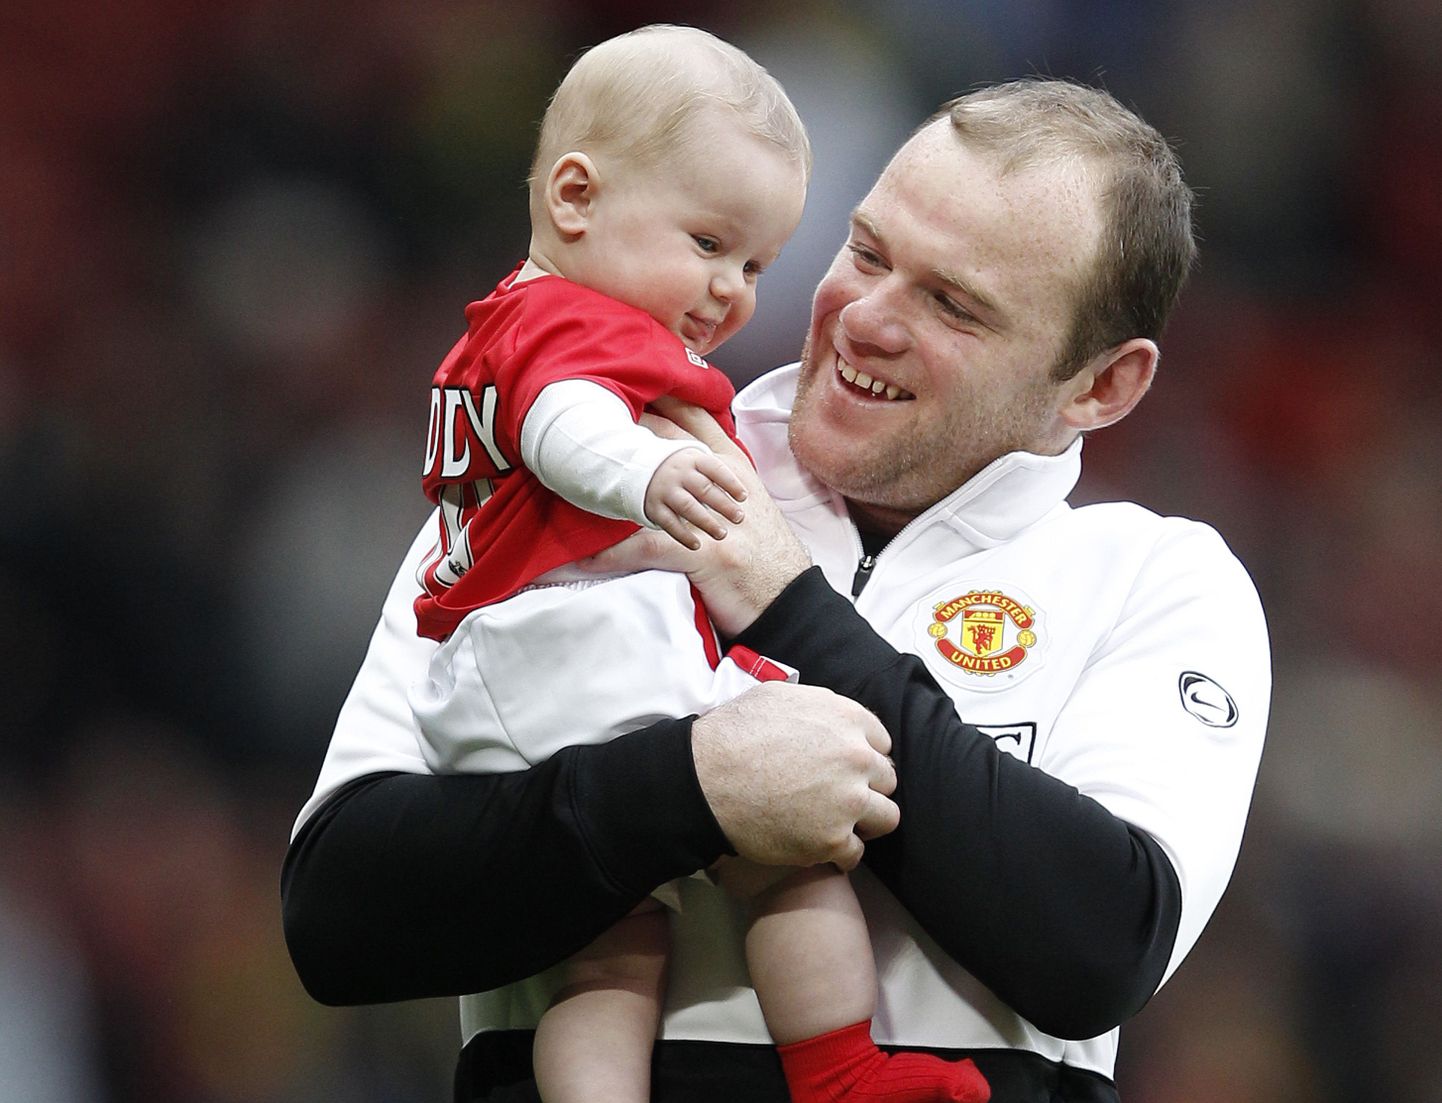 Arhiivifoto: Wayne Rooney koos oma poja Kaiga.